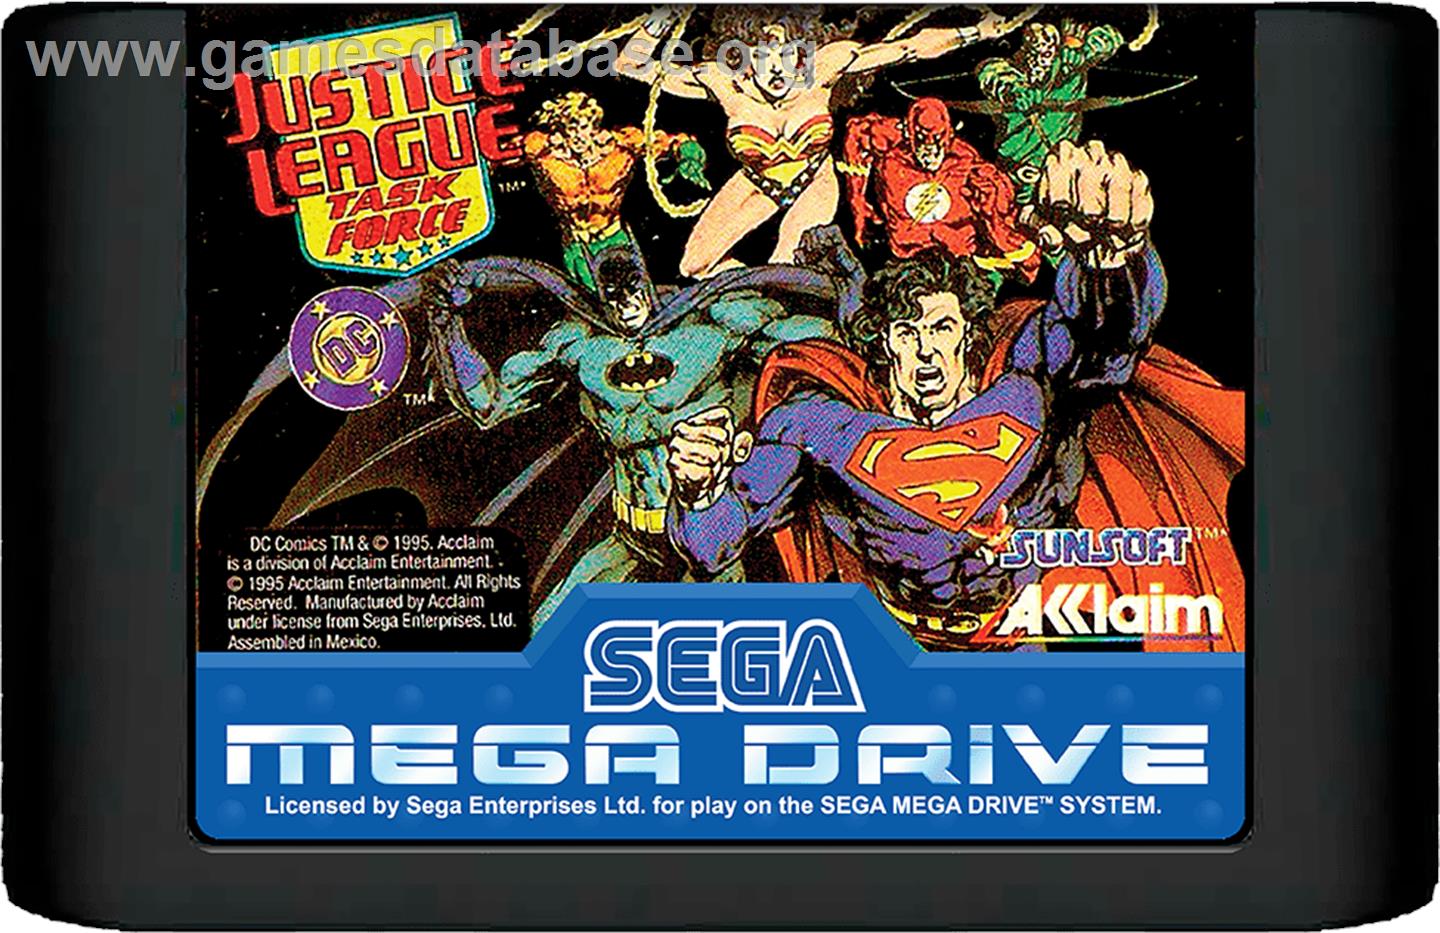 Justice League Task Force - Sega Genesis - Artwork - Cartridge